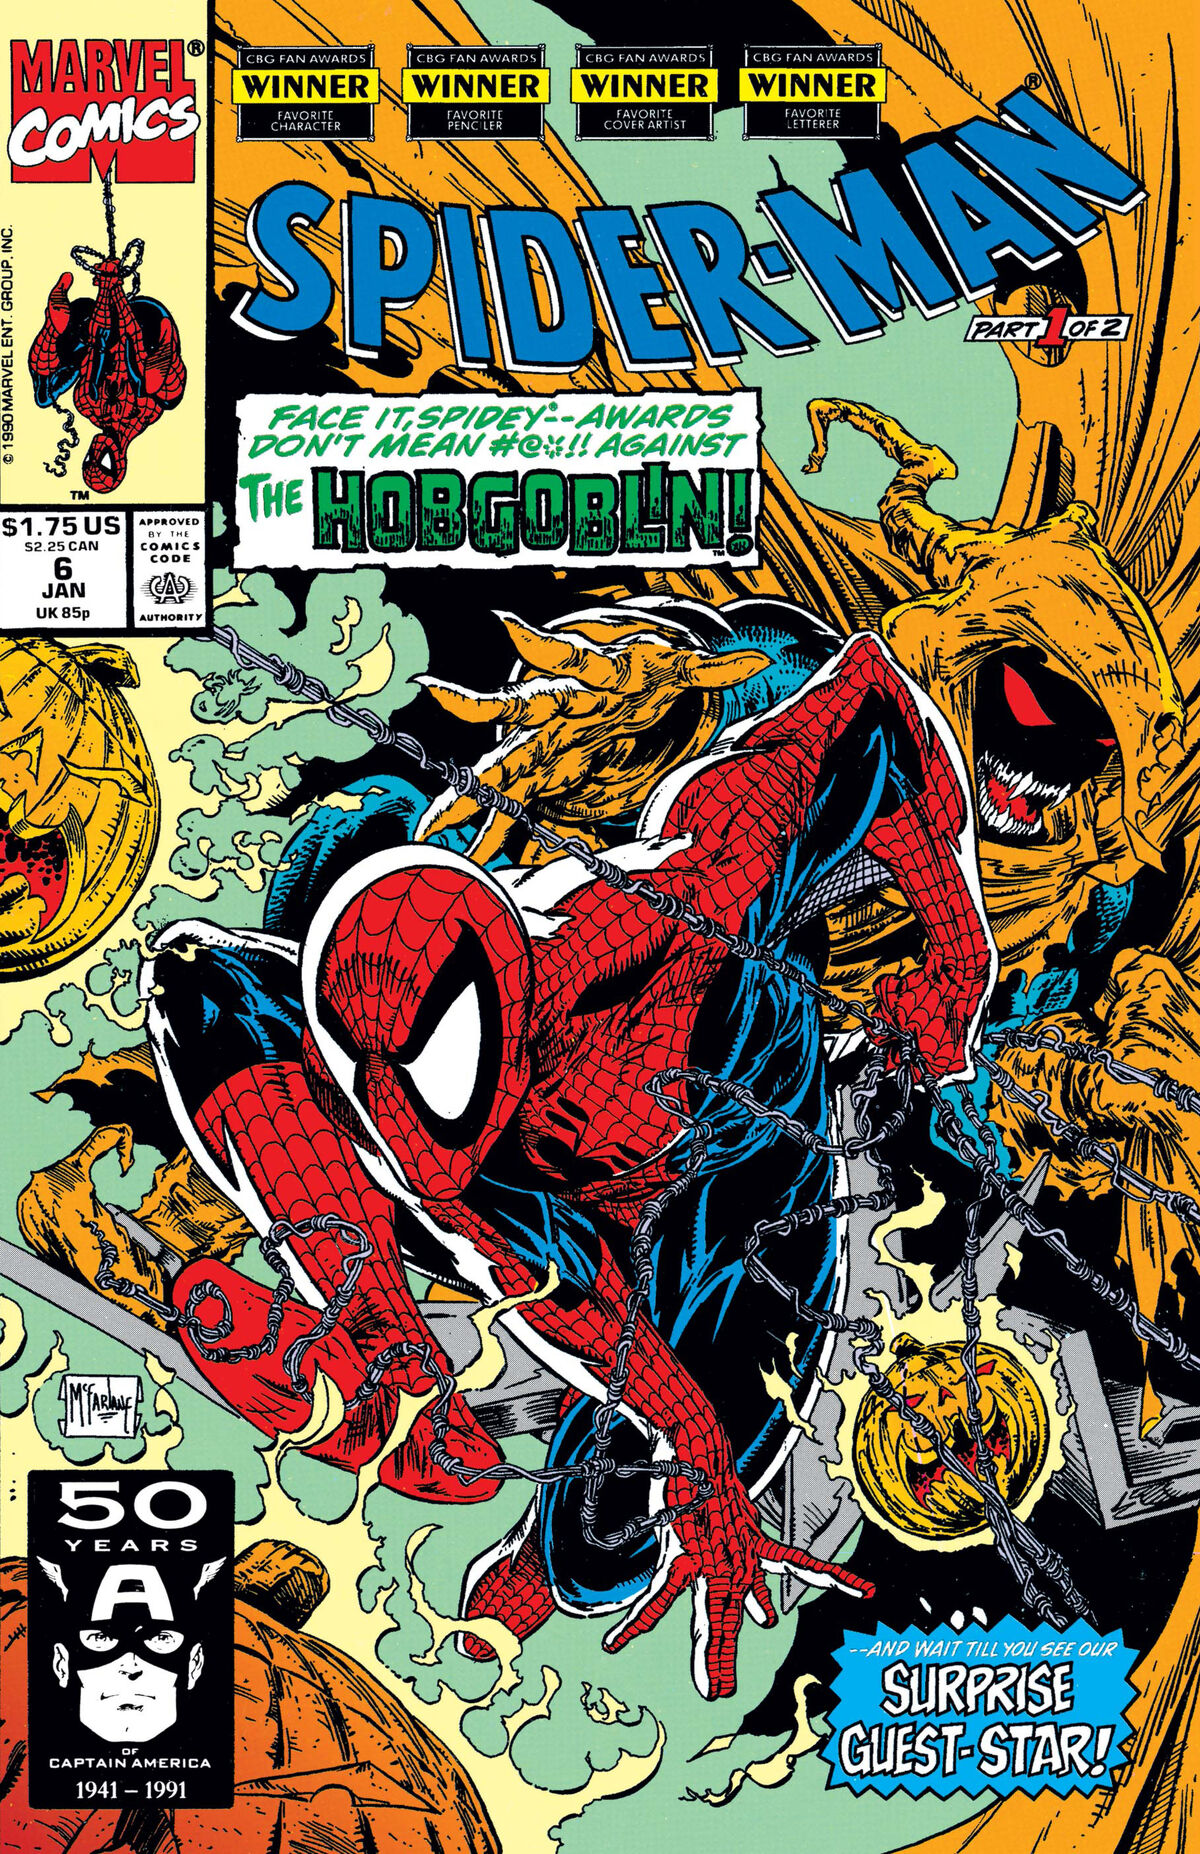 Spider-Man Vol 1 6 | Marvel Database | Fandom